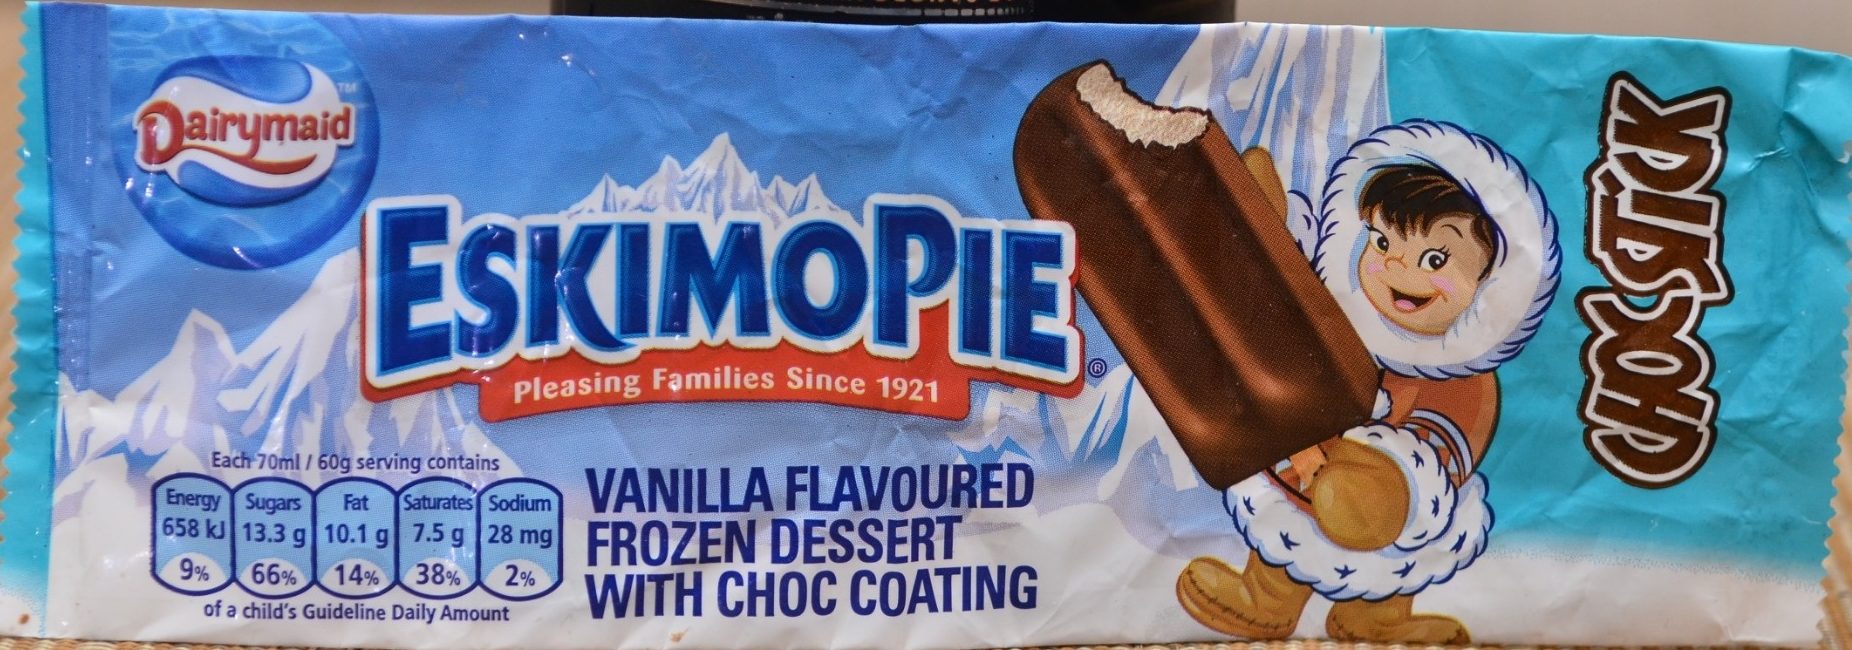 eskimo pie ice cream bars 